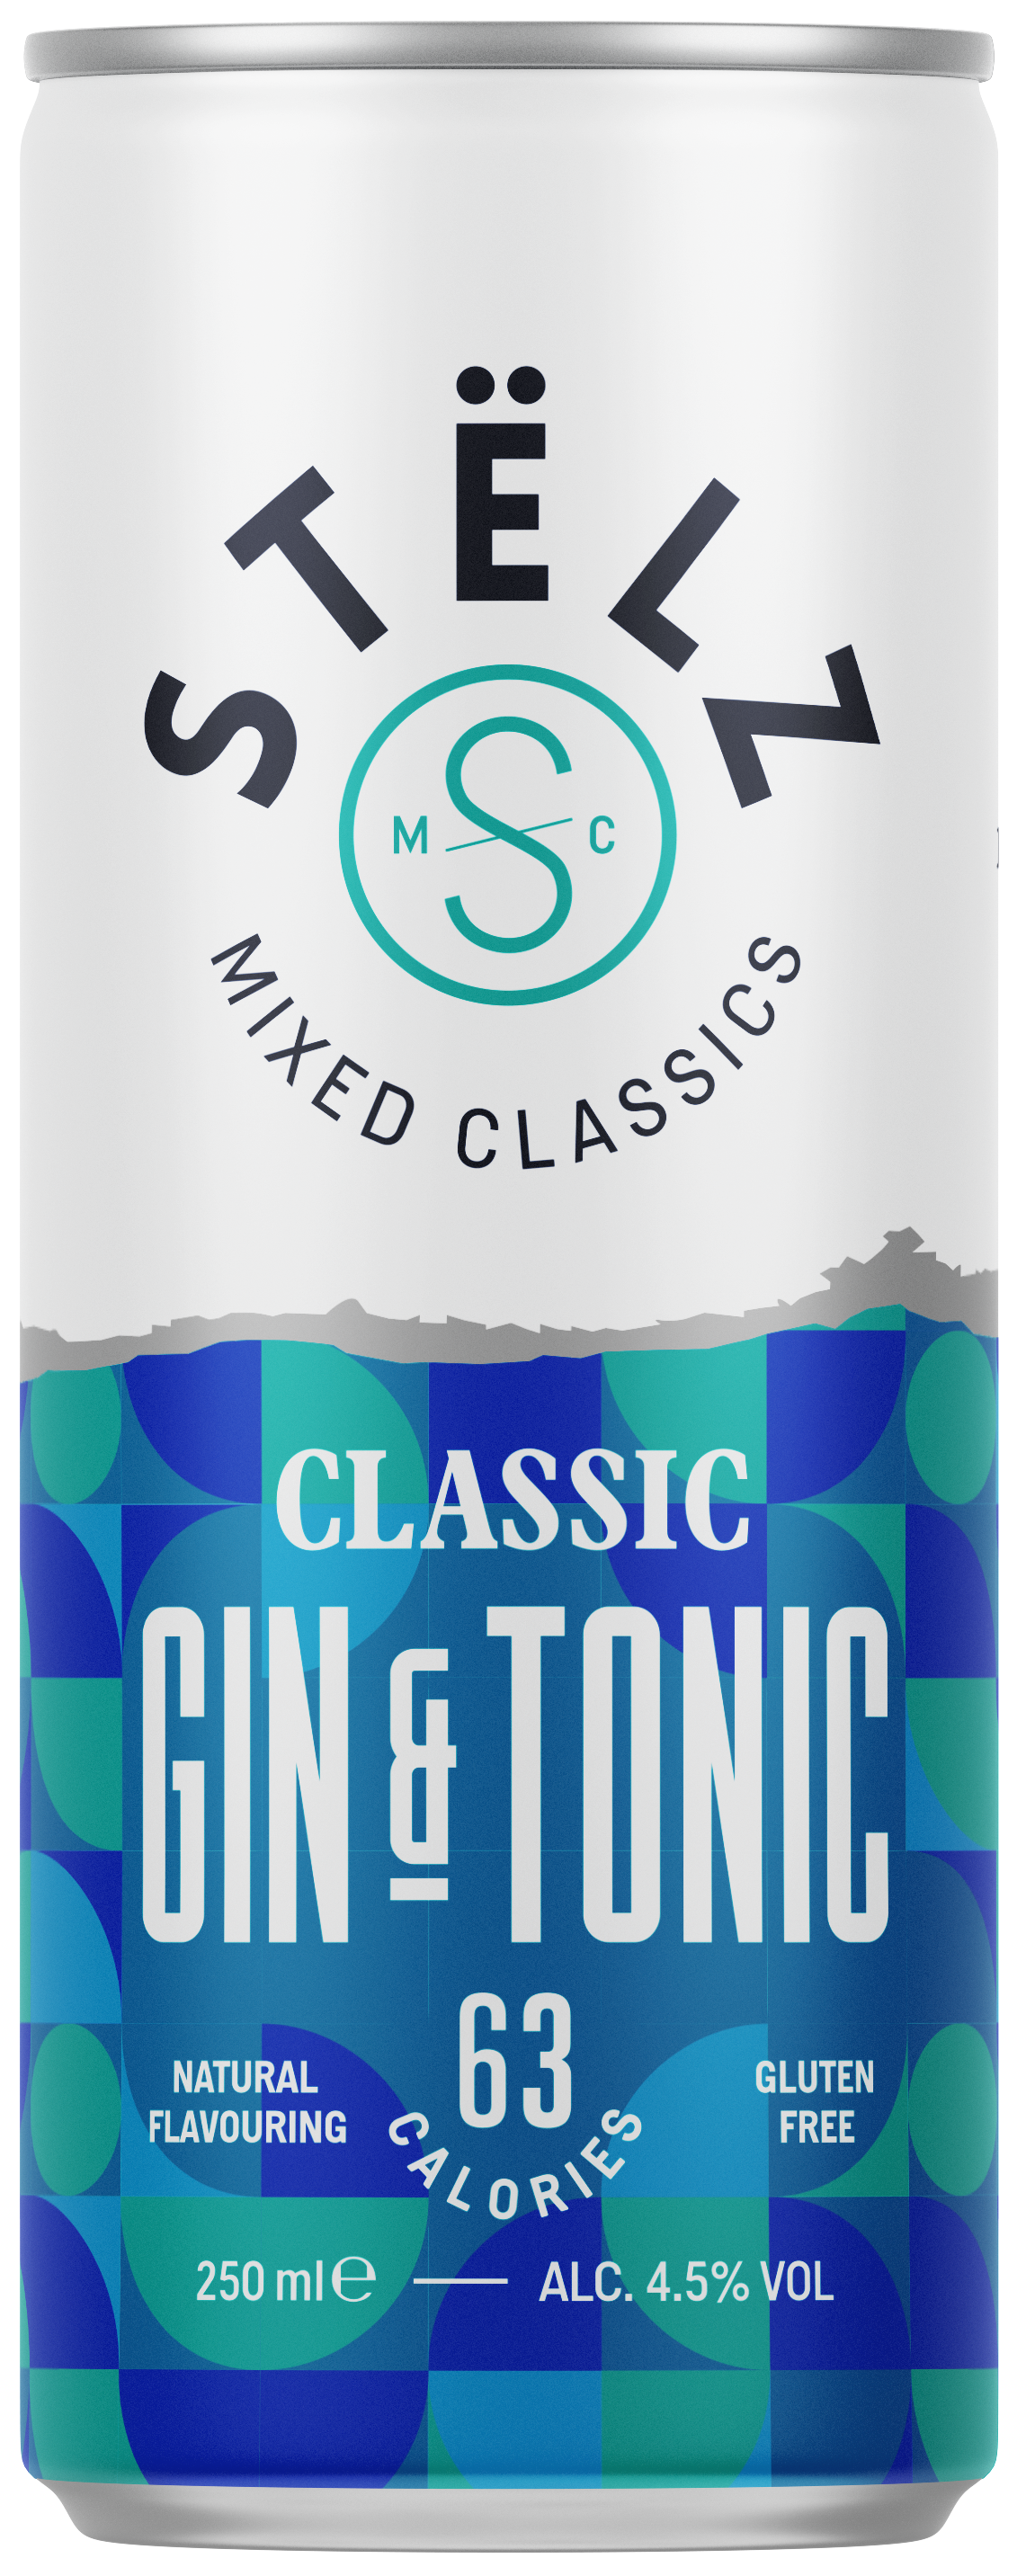 STËLZ Mixed Classics Gin & Tonic